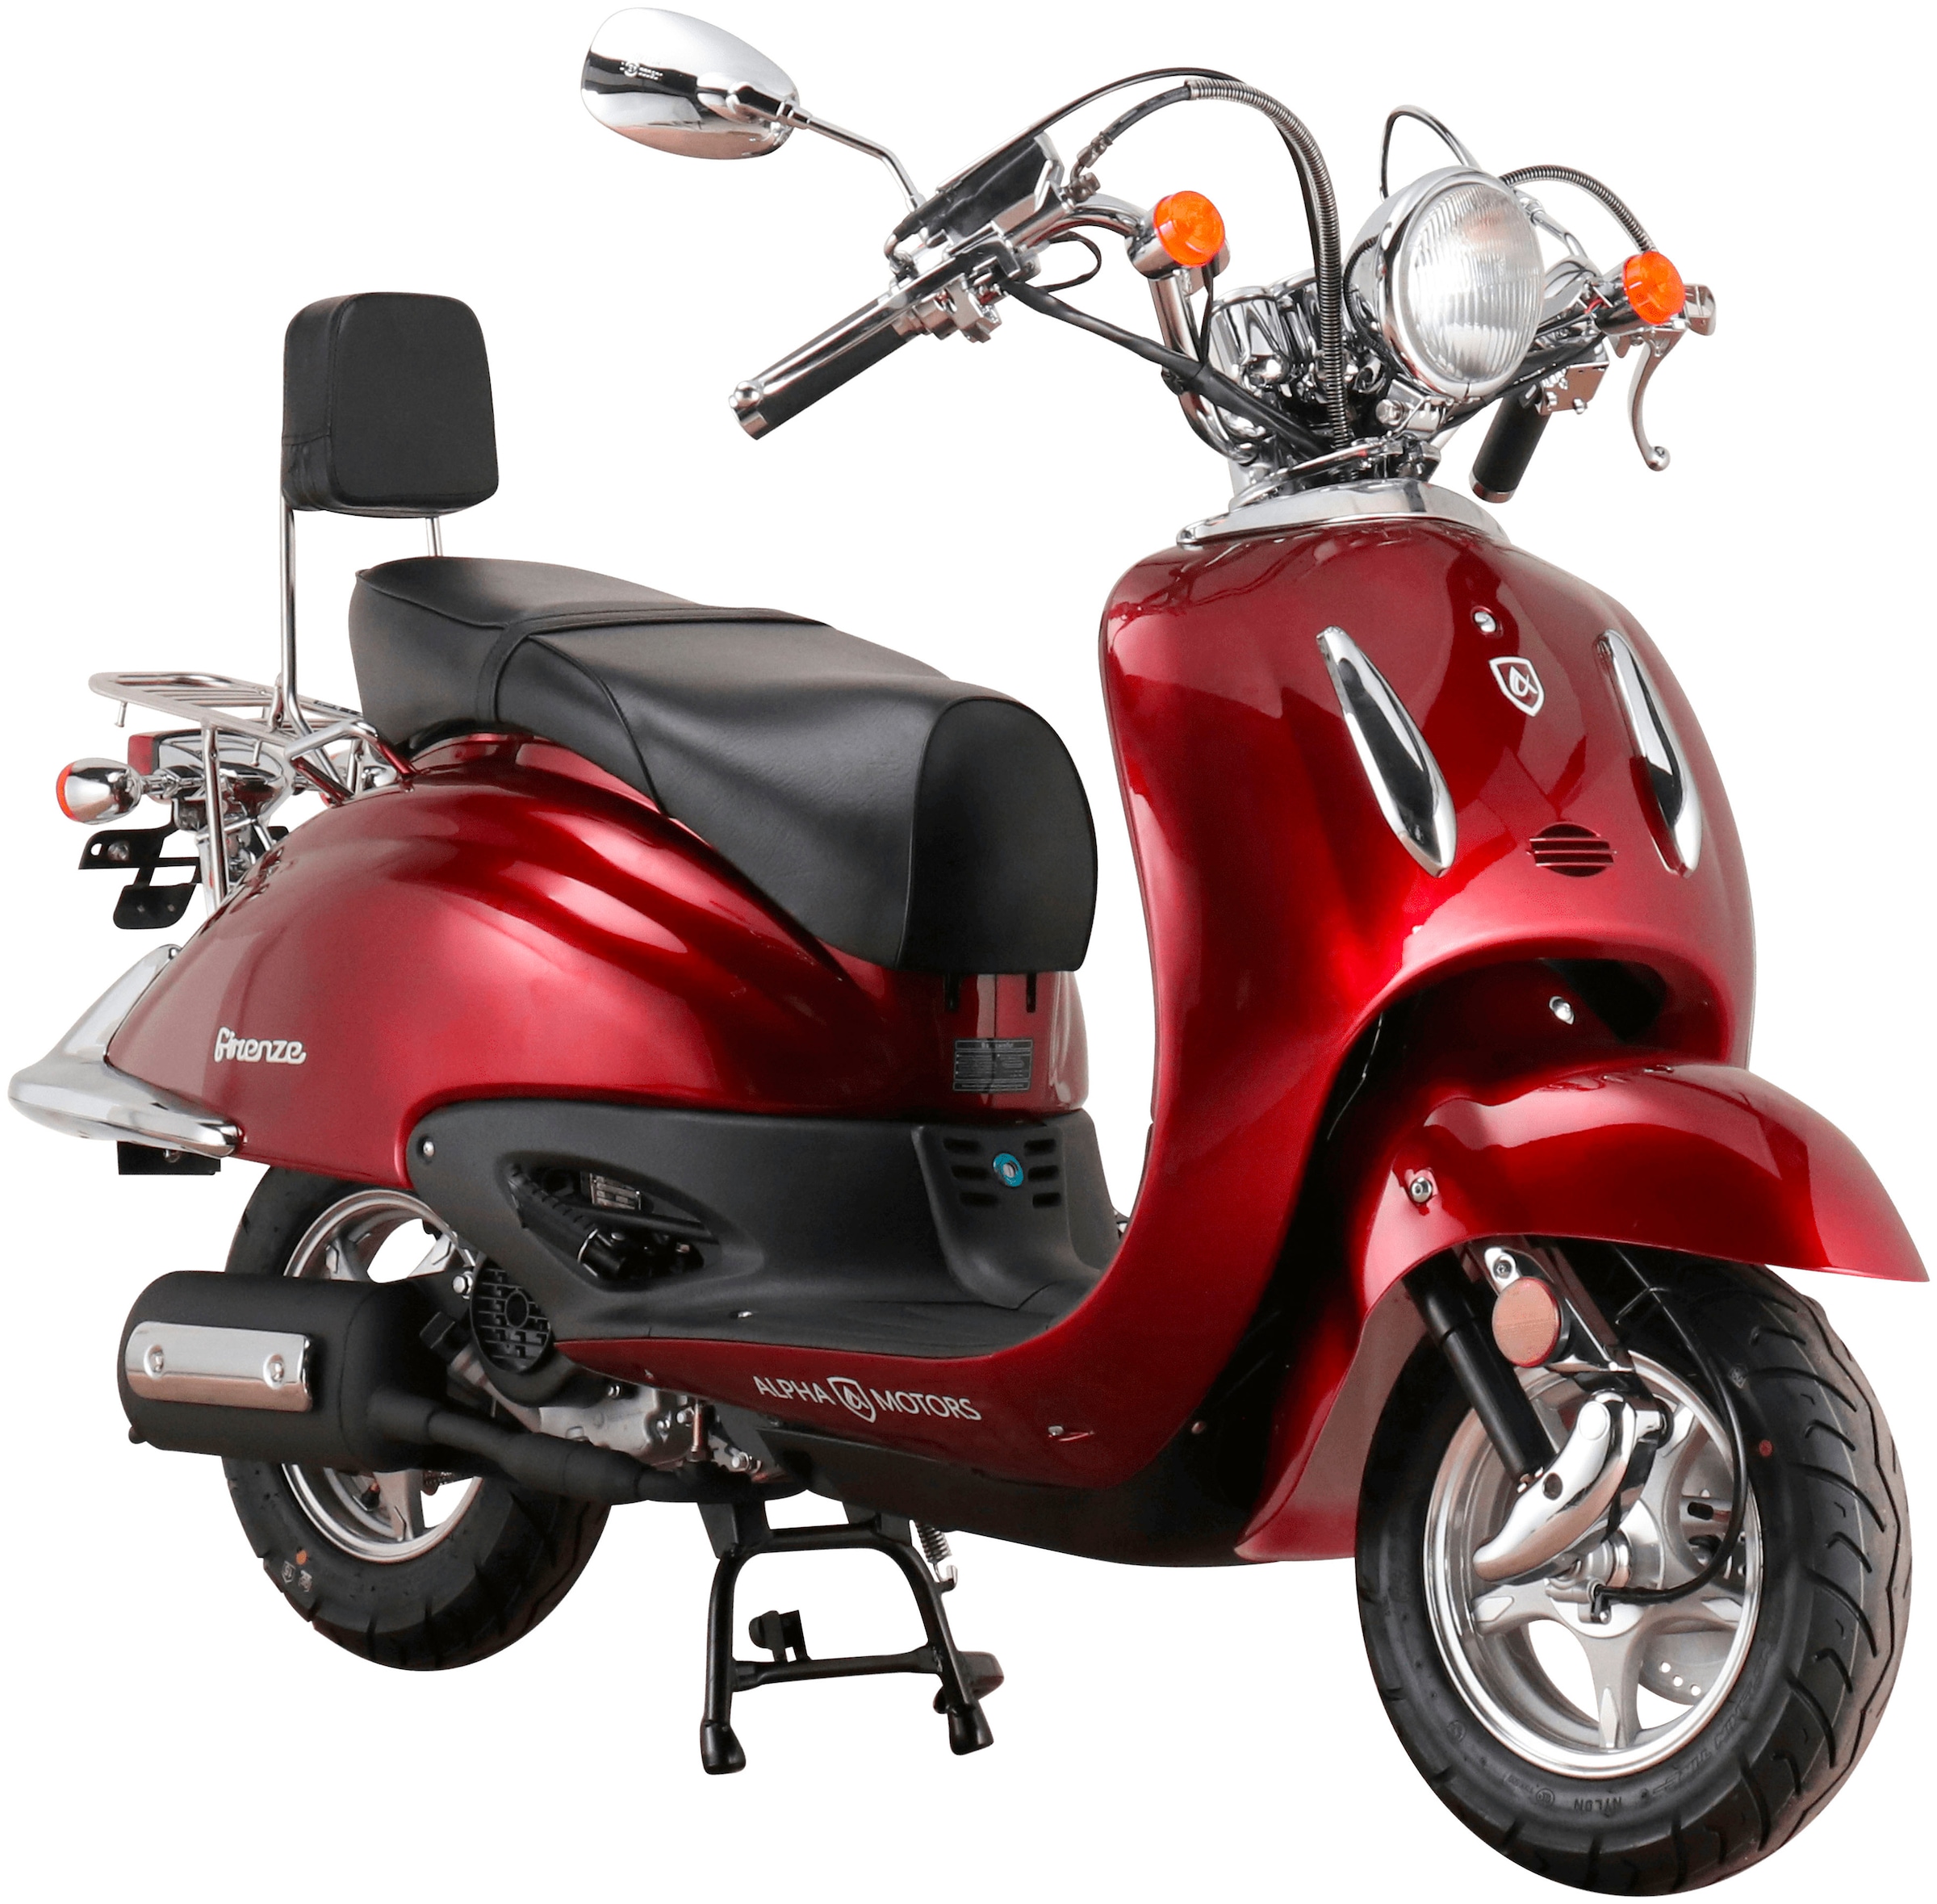 Motorroller »Retro Firenze«, 125 cm³, 85 km/h, Euro 5, 8,6 PS, mit Lenkerschloss